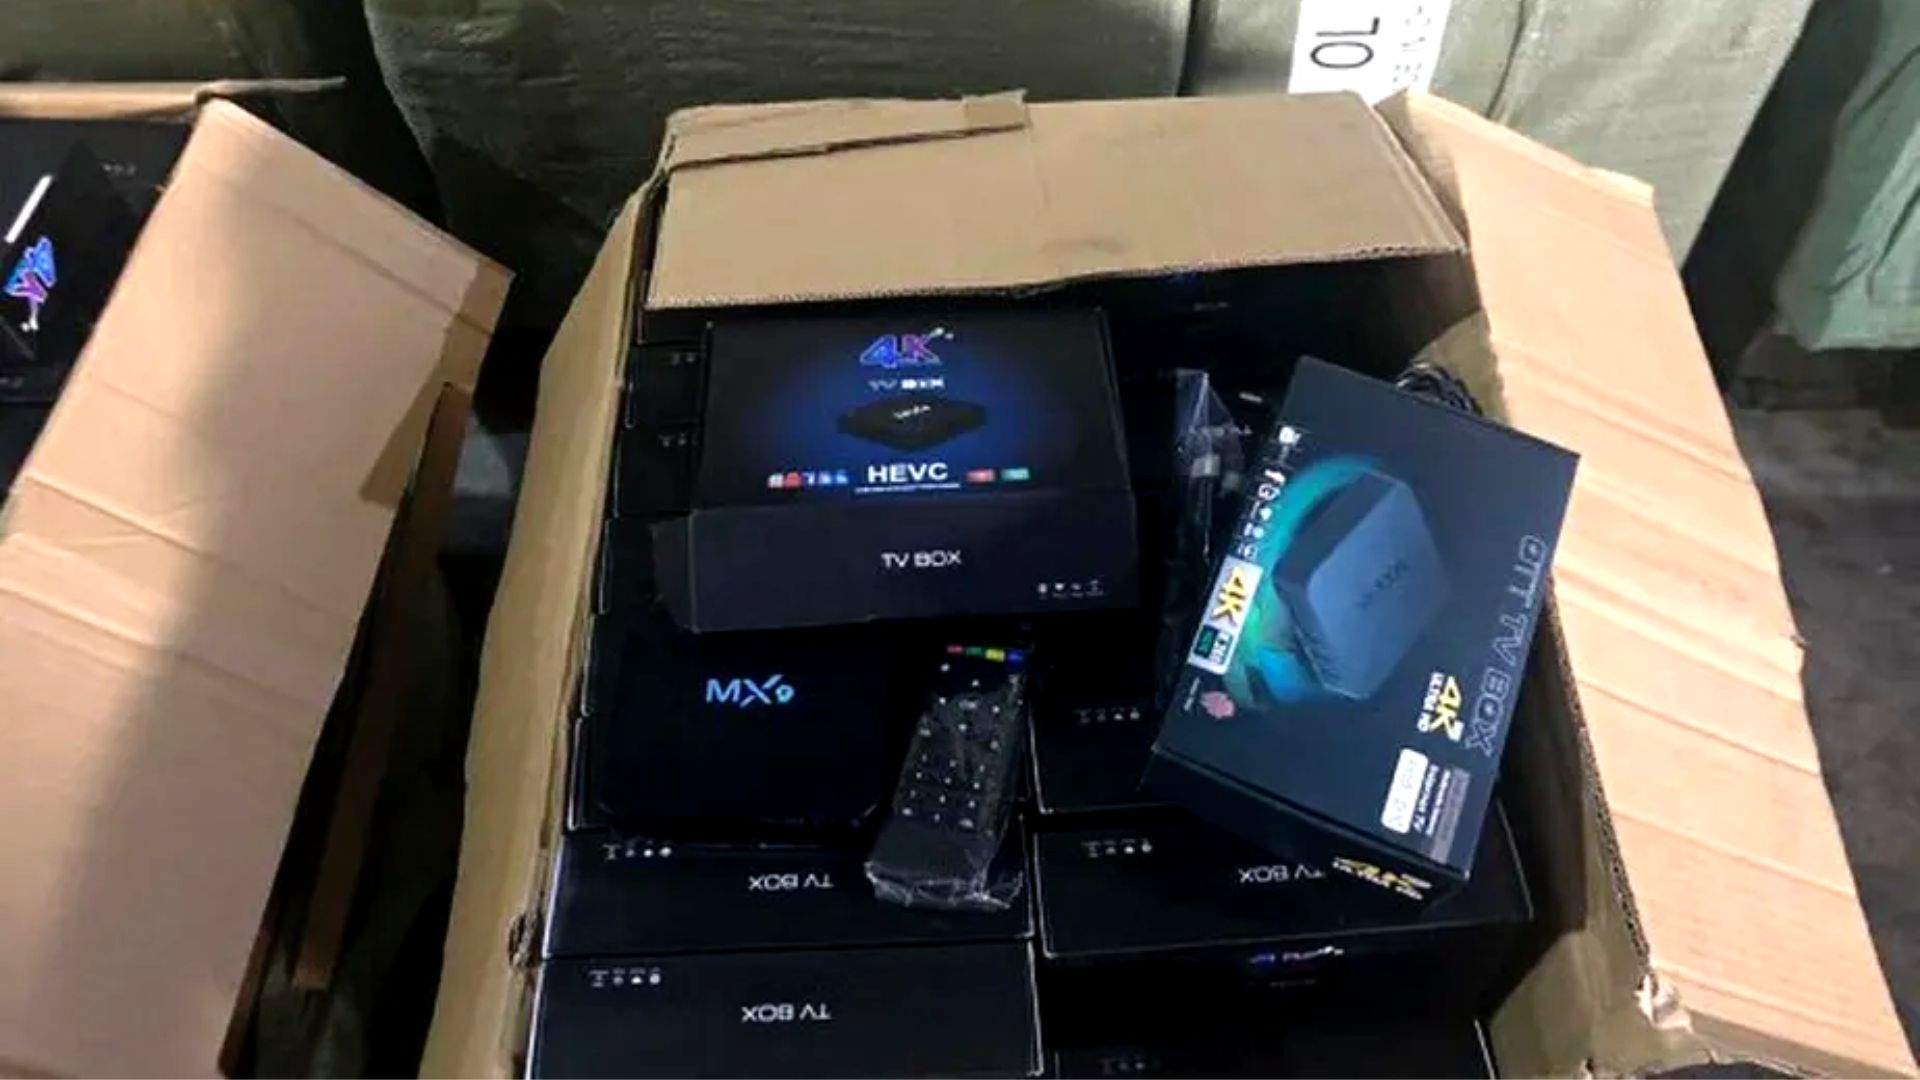 Aparelhos de TV Box apreendidos durante operação da Anatel - Foto: Divulgação/Anatel